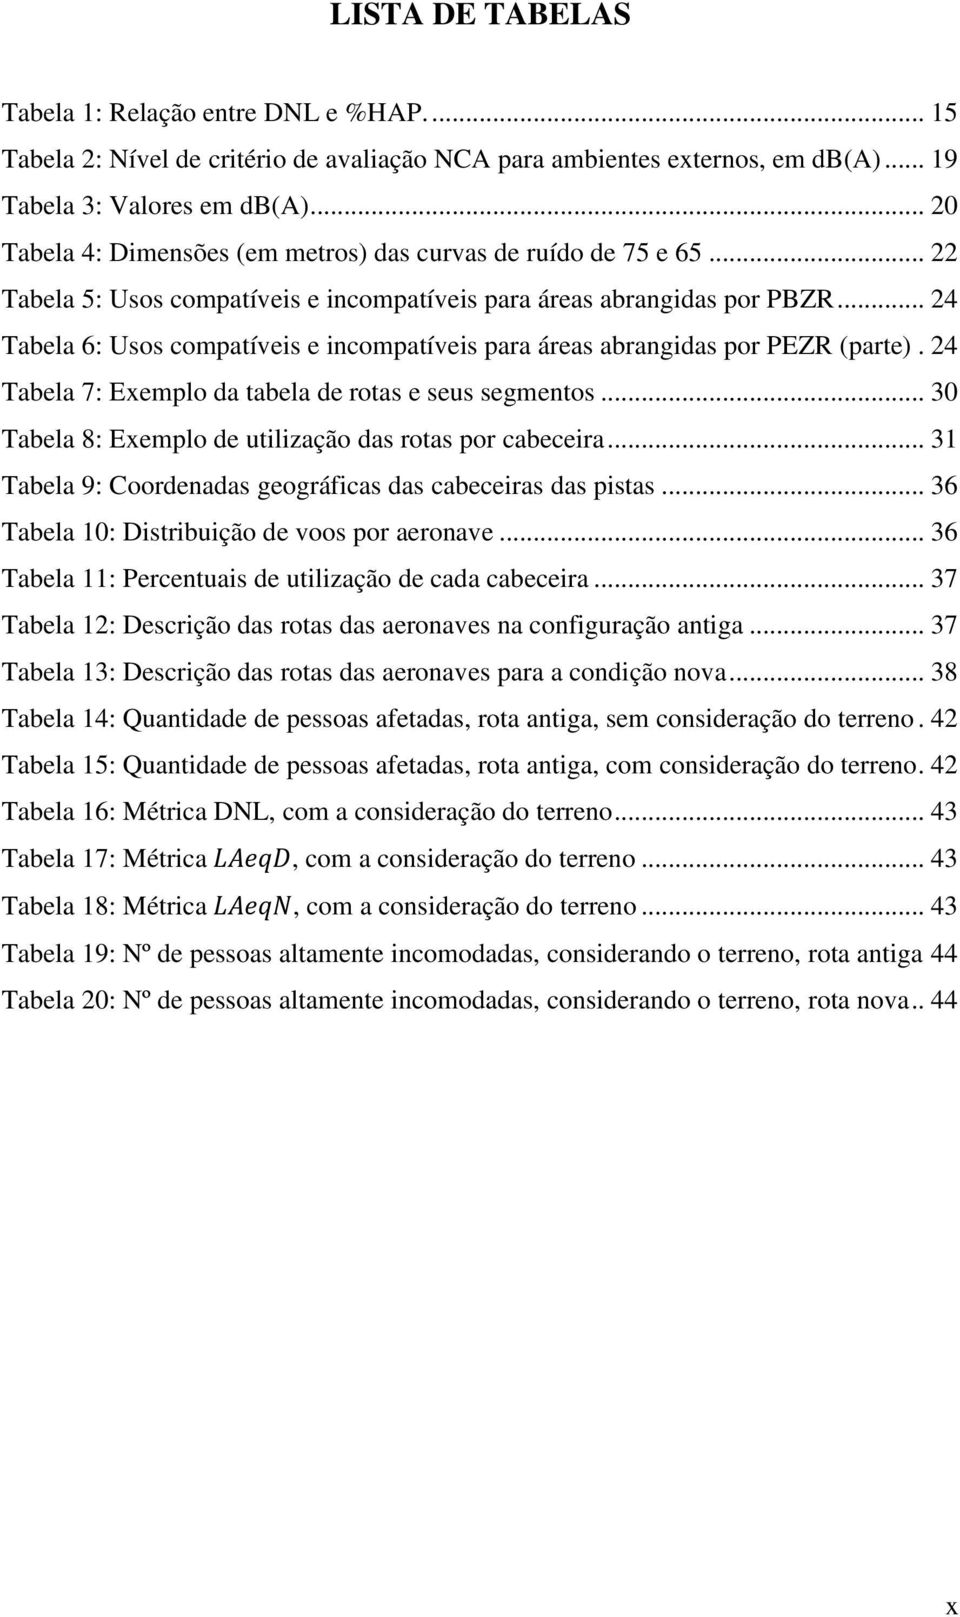 .. 24 Tabela 6: Usos compatíveis e incompatíveis para áreas abrangidas por PEZR (parte). 24 Tabela 7: Exemplo da tabela de rotas e seus segmentos.